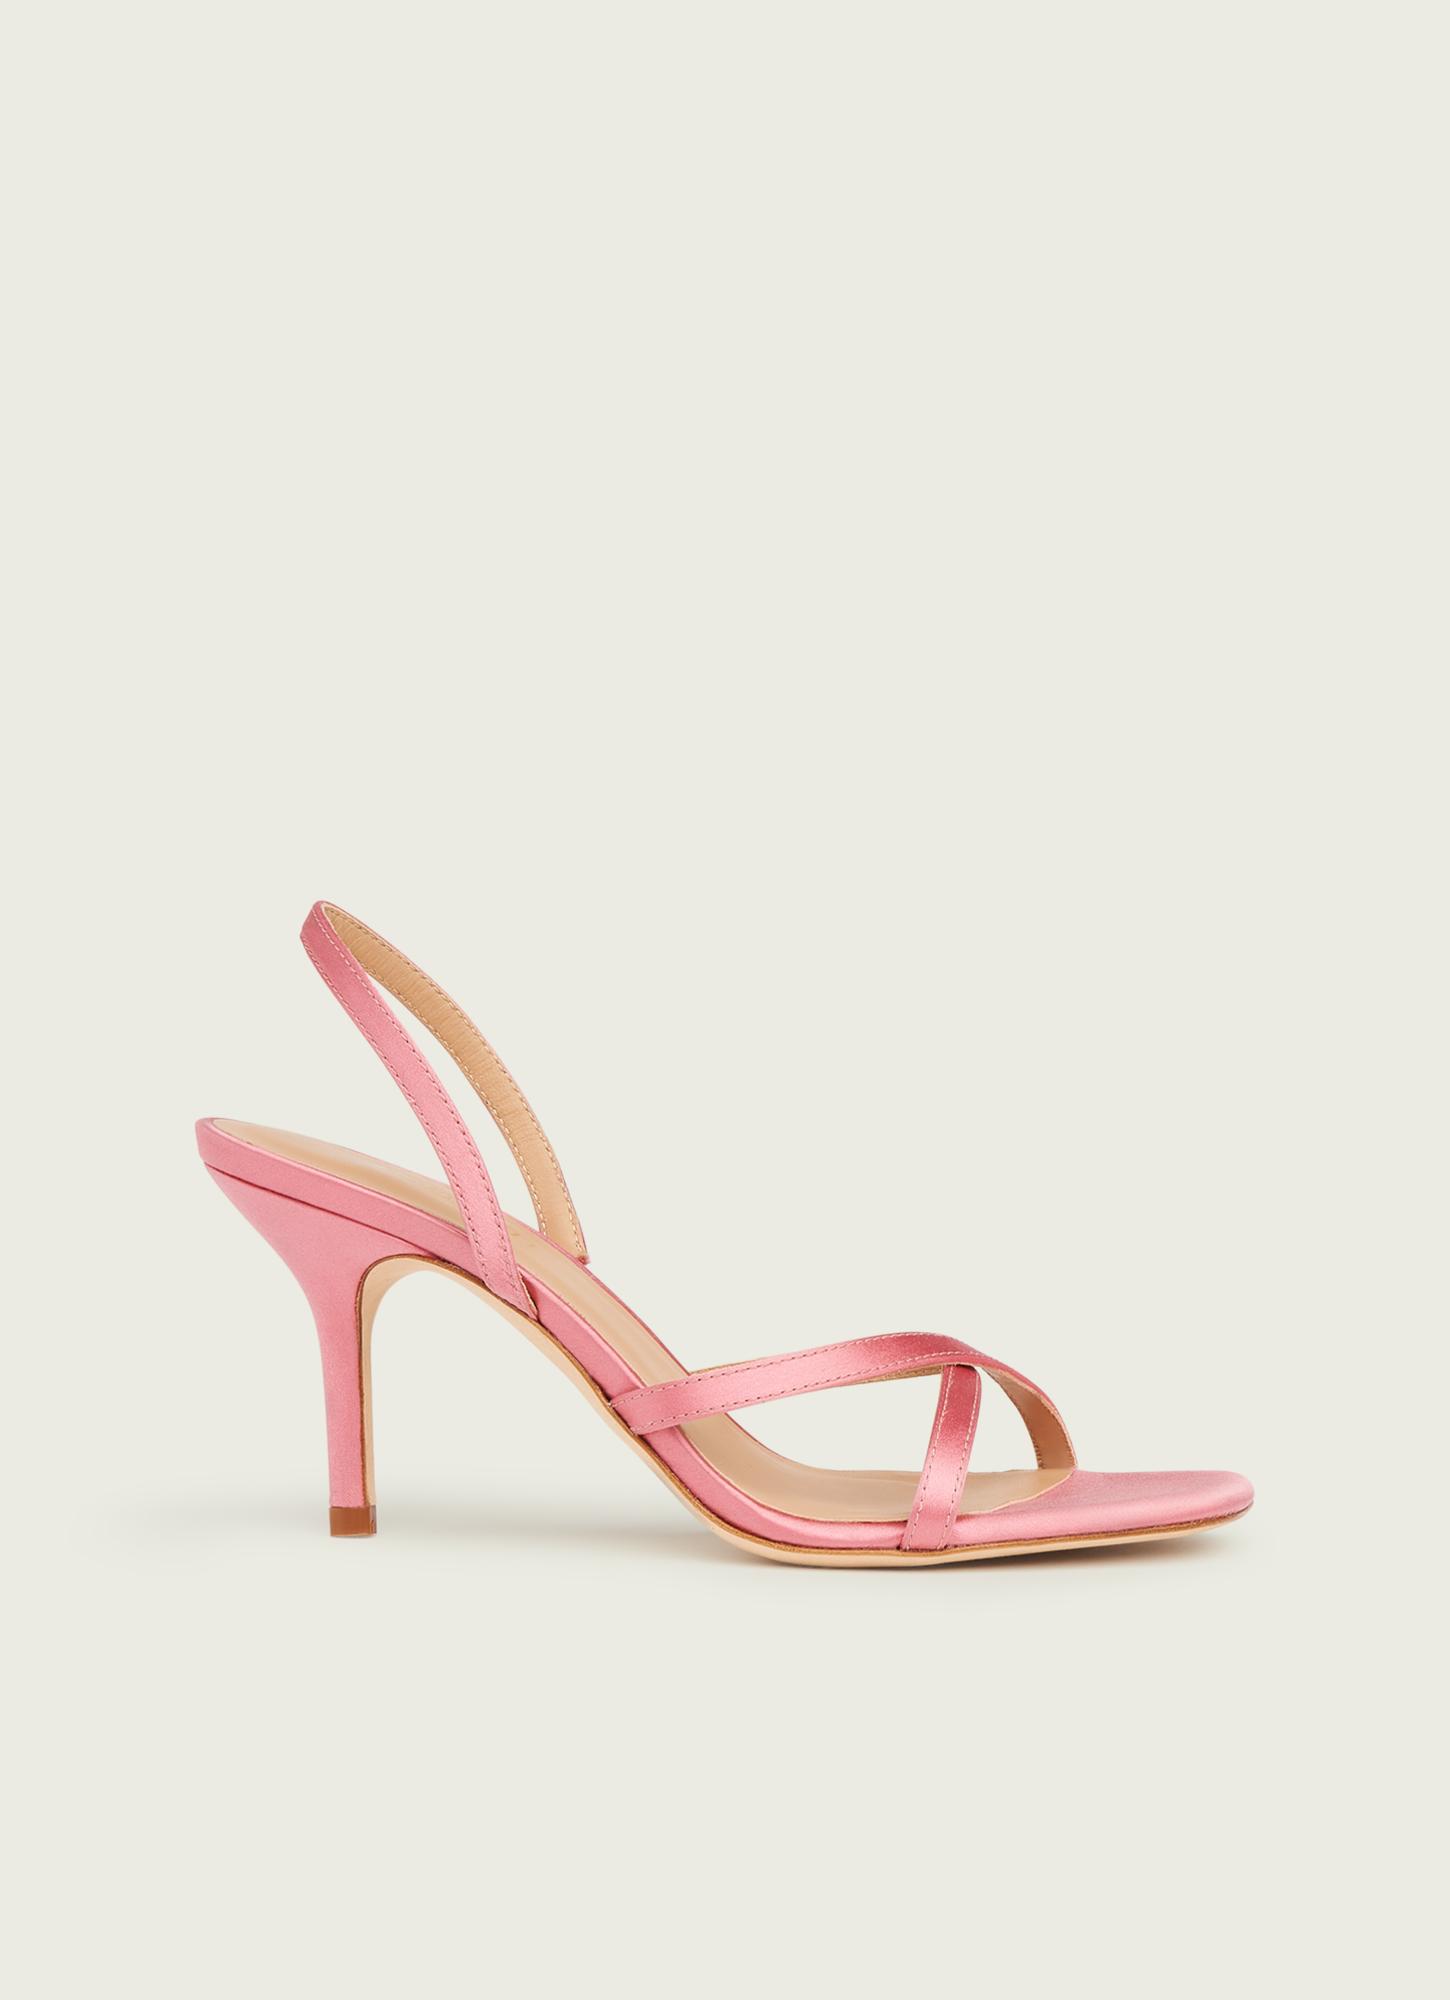 Noon Pink Satin Formal Sandals | Shoes | L.K.Bennett